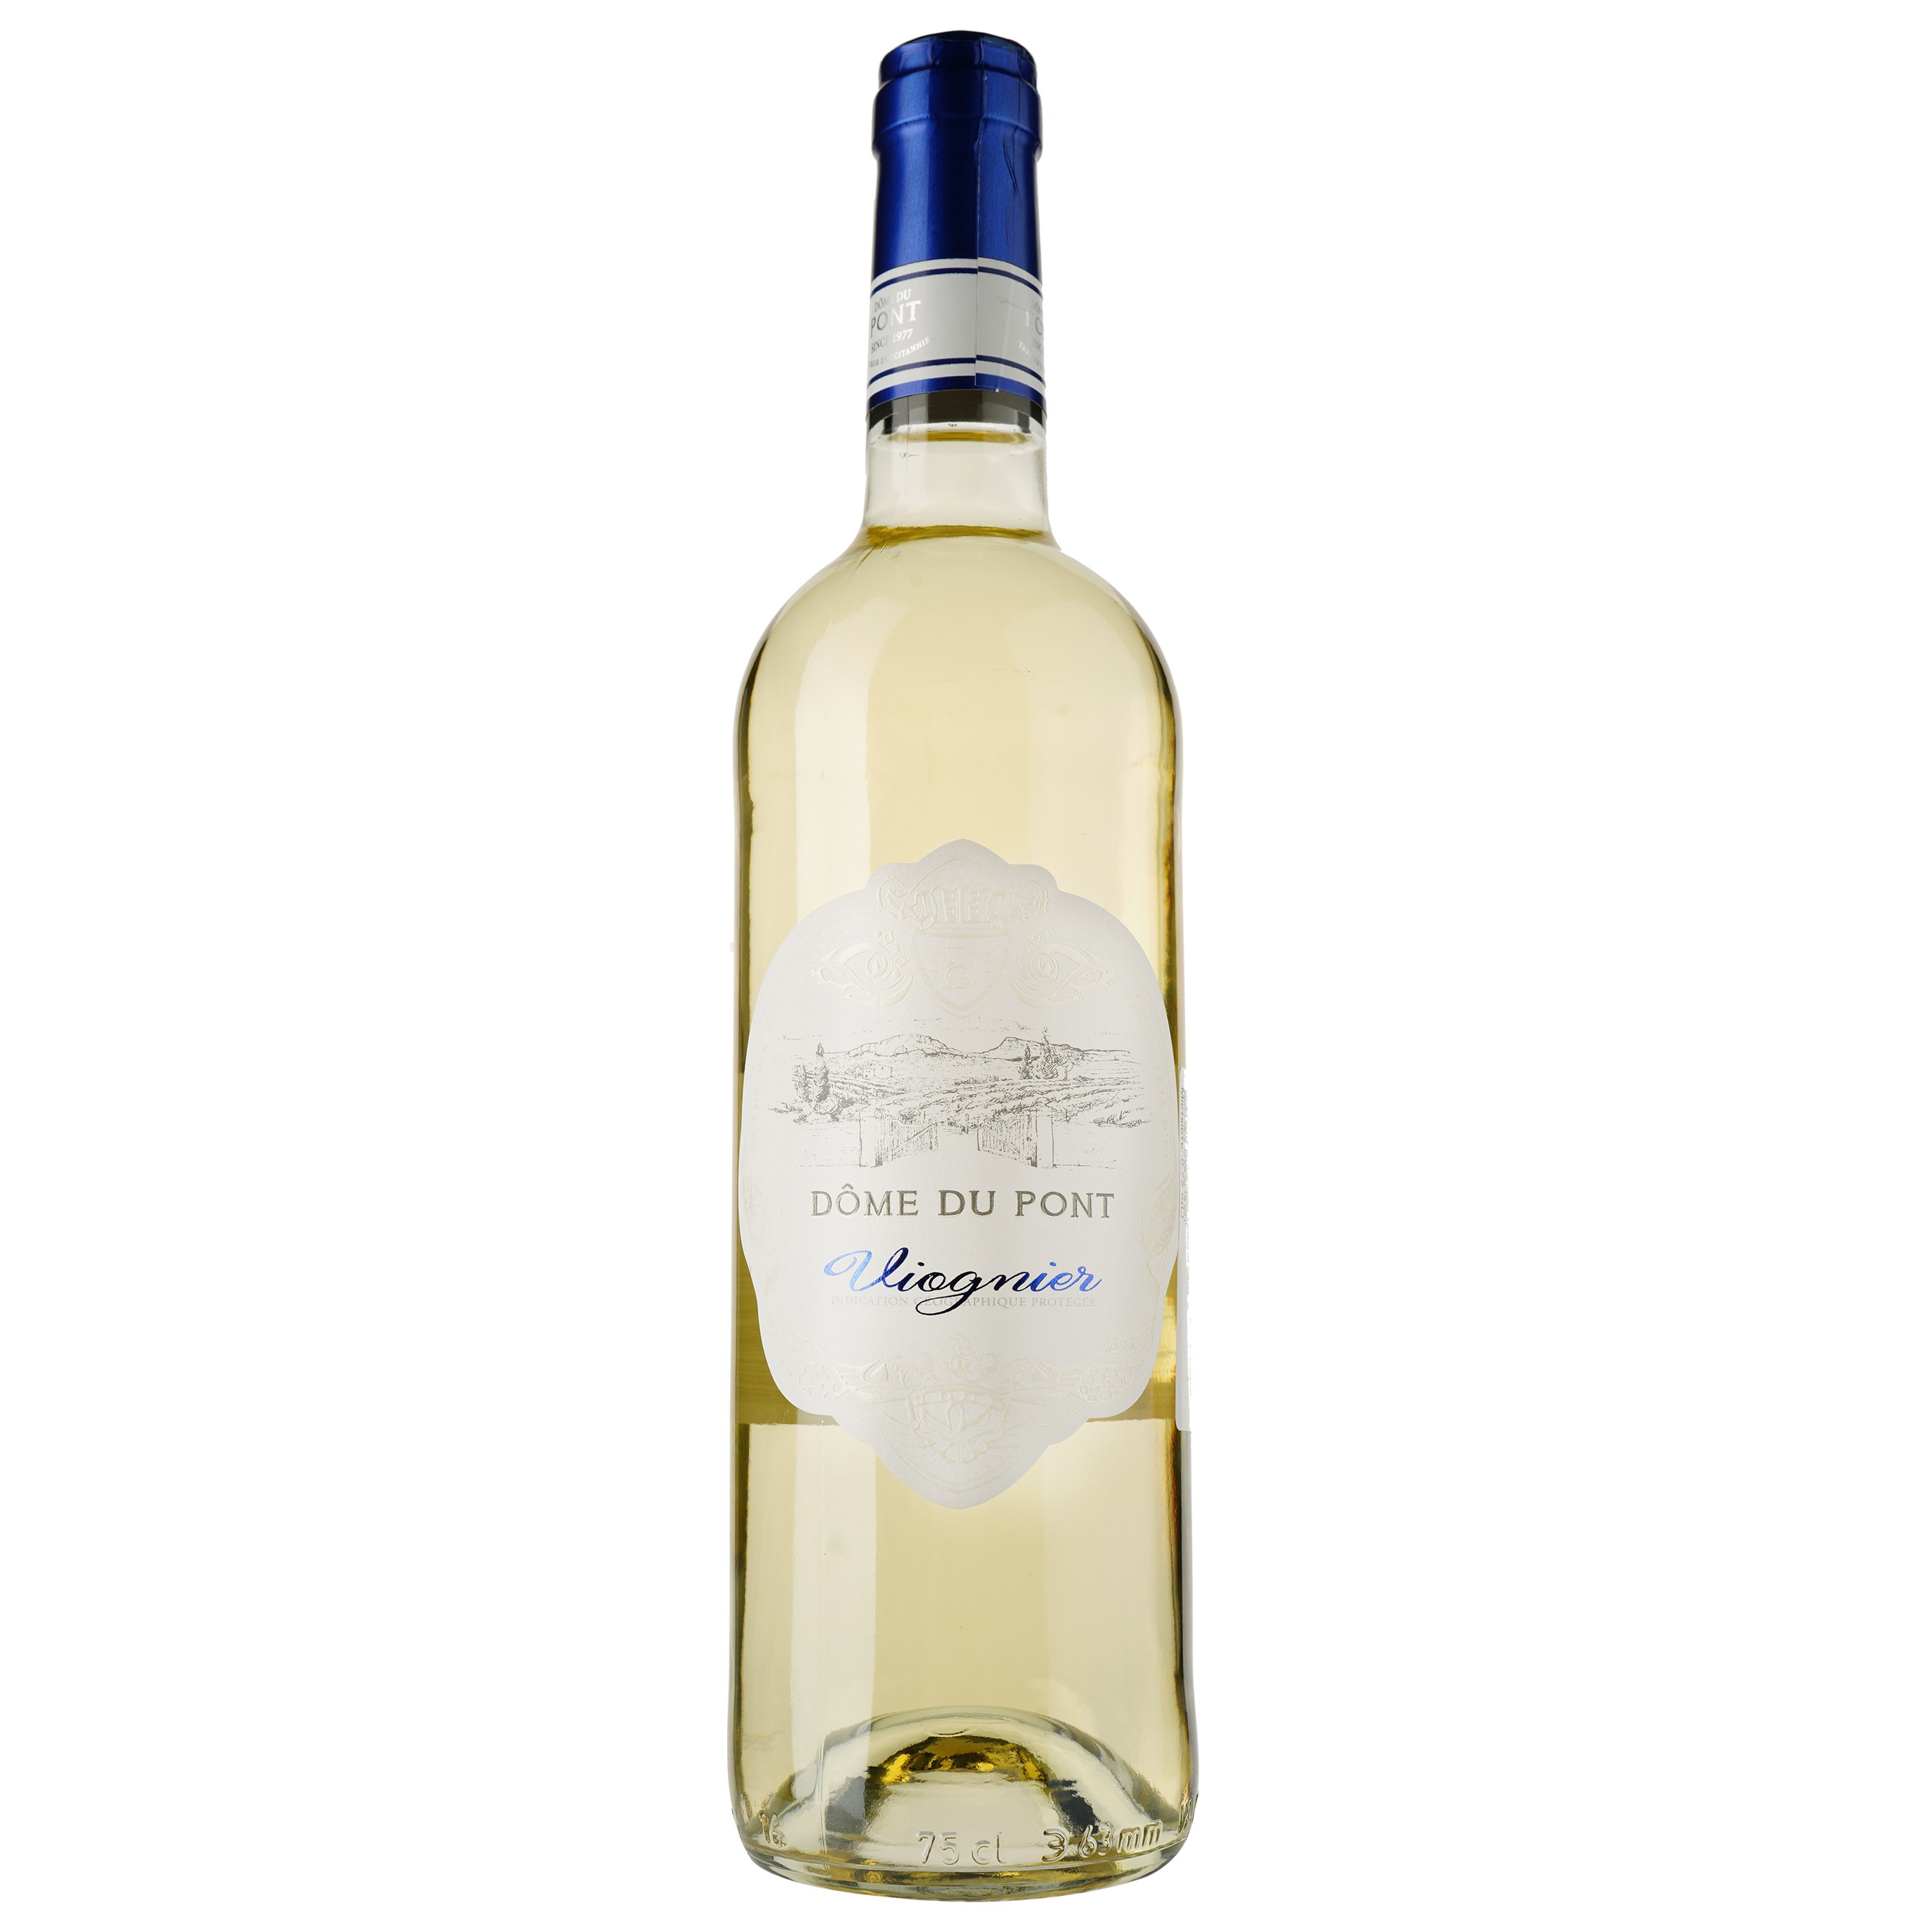 Вино Dome du Pont Viognier Blanc IGP Pays D'Oc, белое, сухое, 0,75 л - фото 1